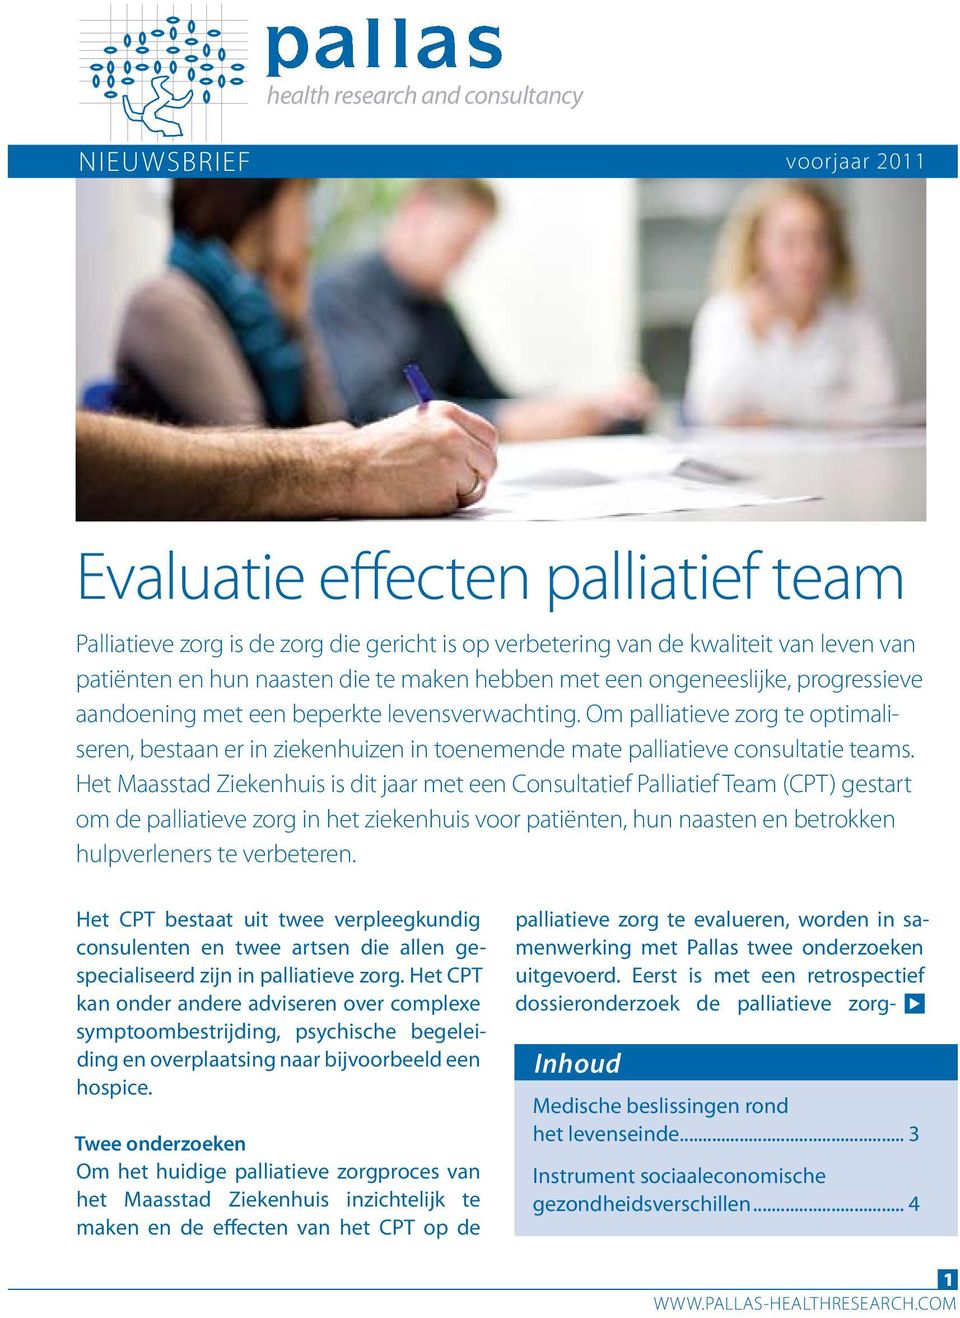 Om palliatieve zorg te optimaliseren, bestaan er in ziekenhuizen in toenemende mate palliatieve consultatie teams.